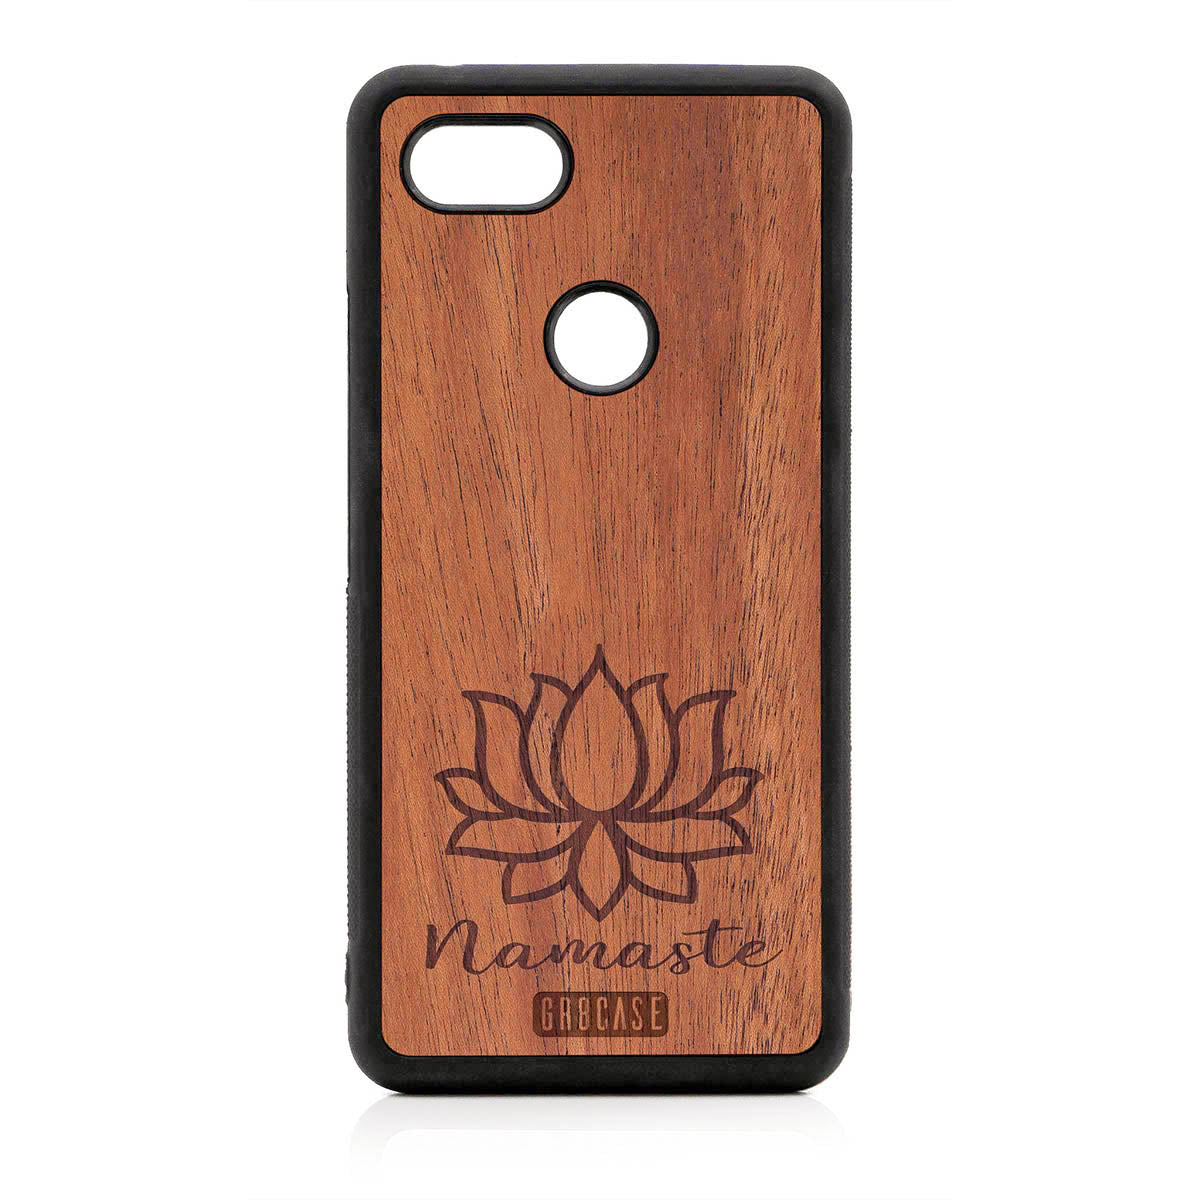 Namaste (Lotus Flower) Design Wood Case For Google Pixel 3 XL